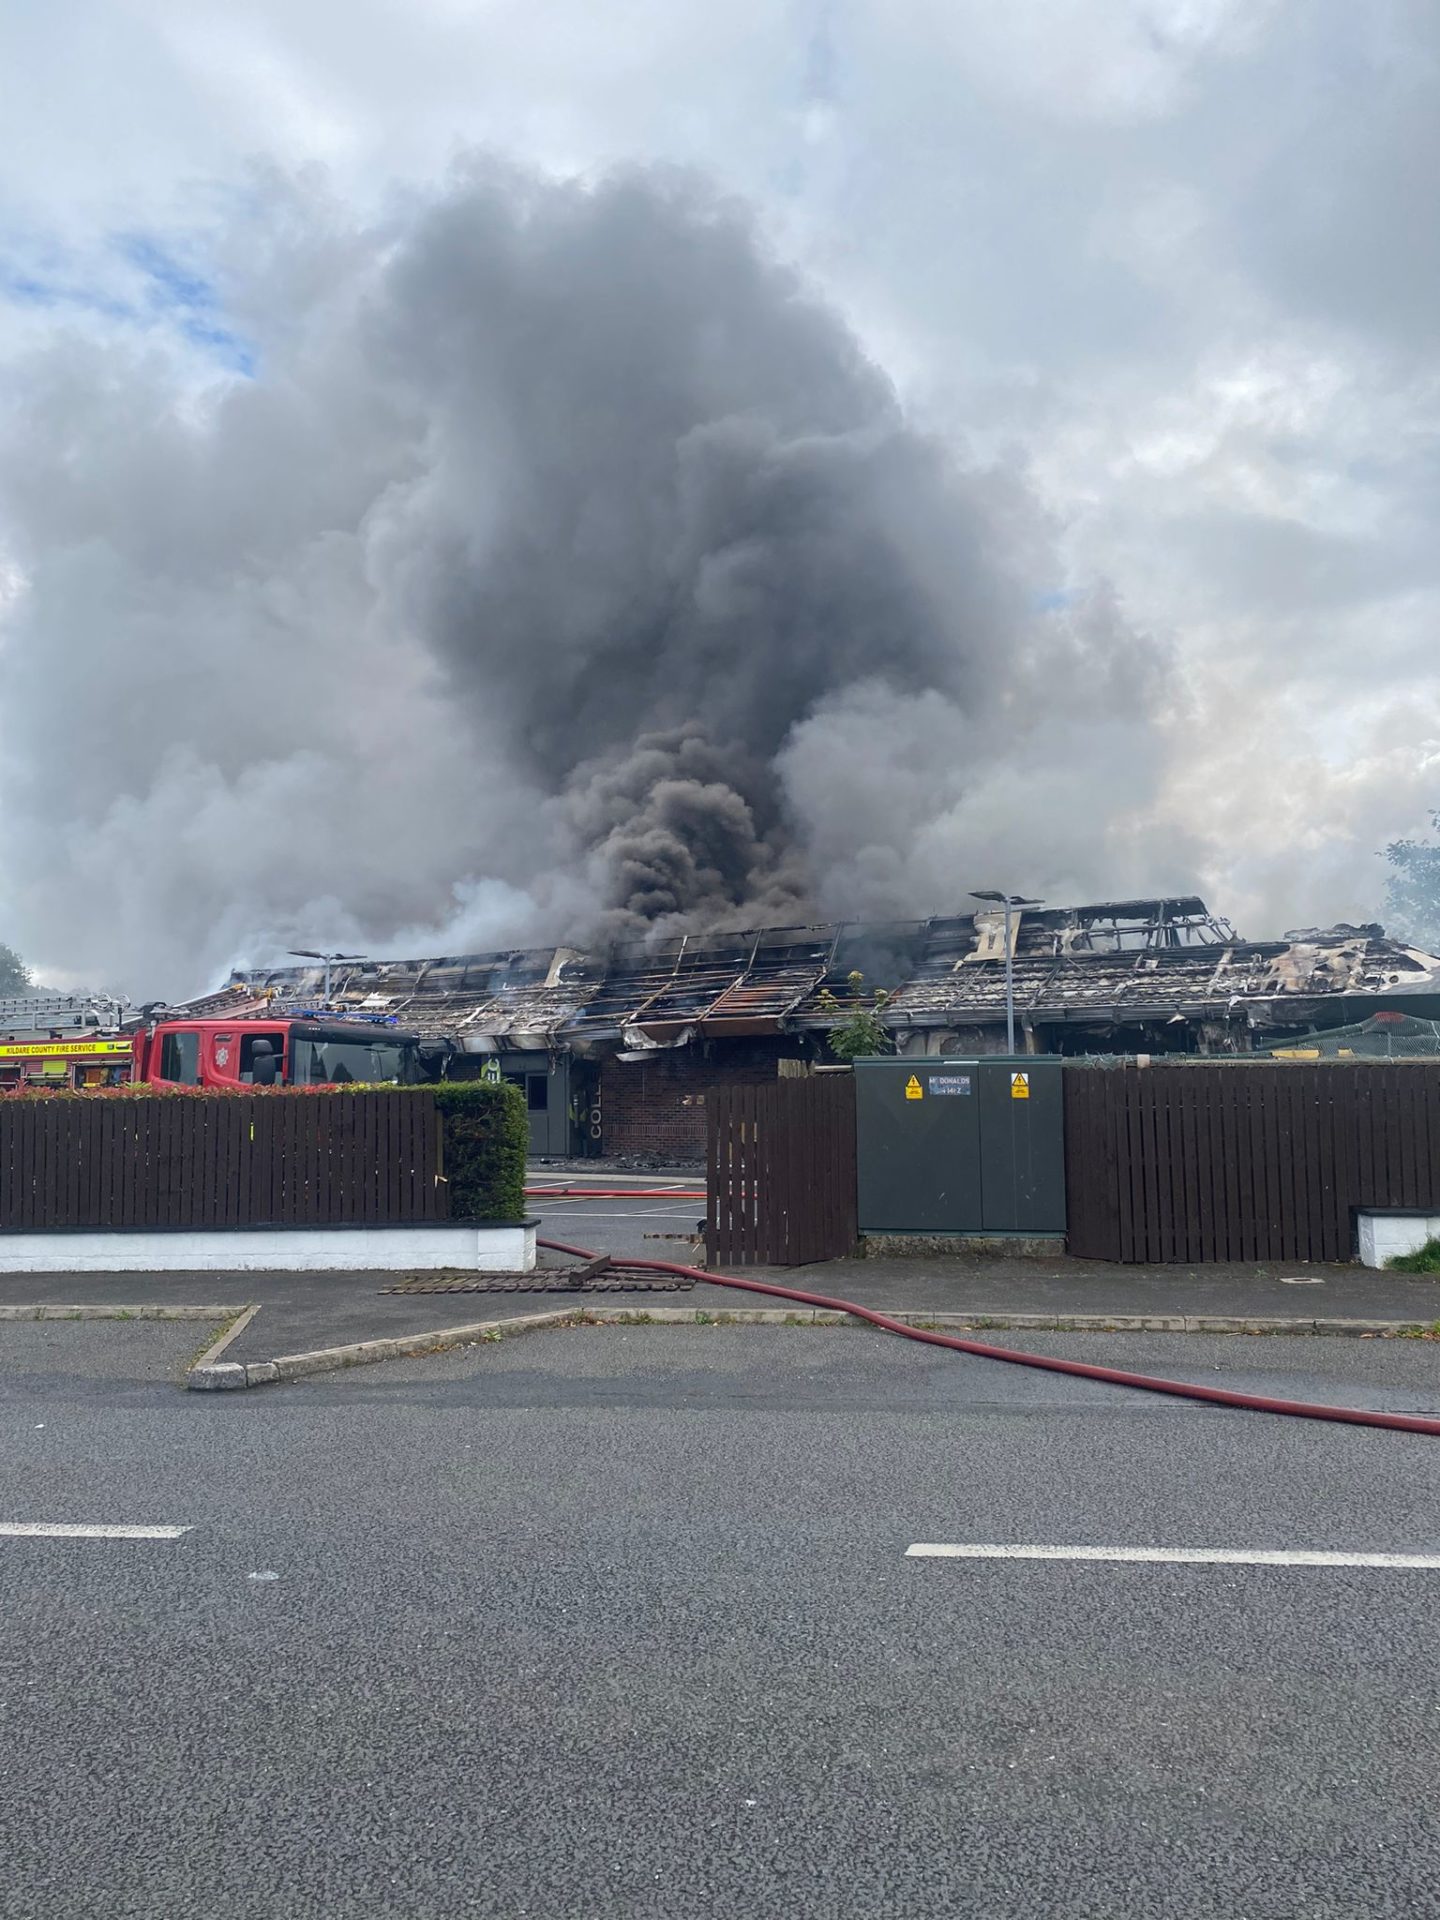 Fire at McDonald's Newbridge (Eoin Beatty from KFM)